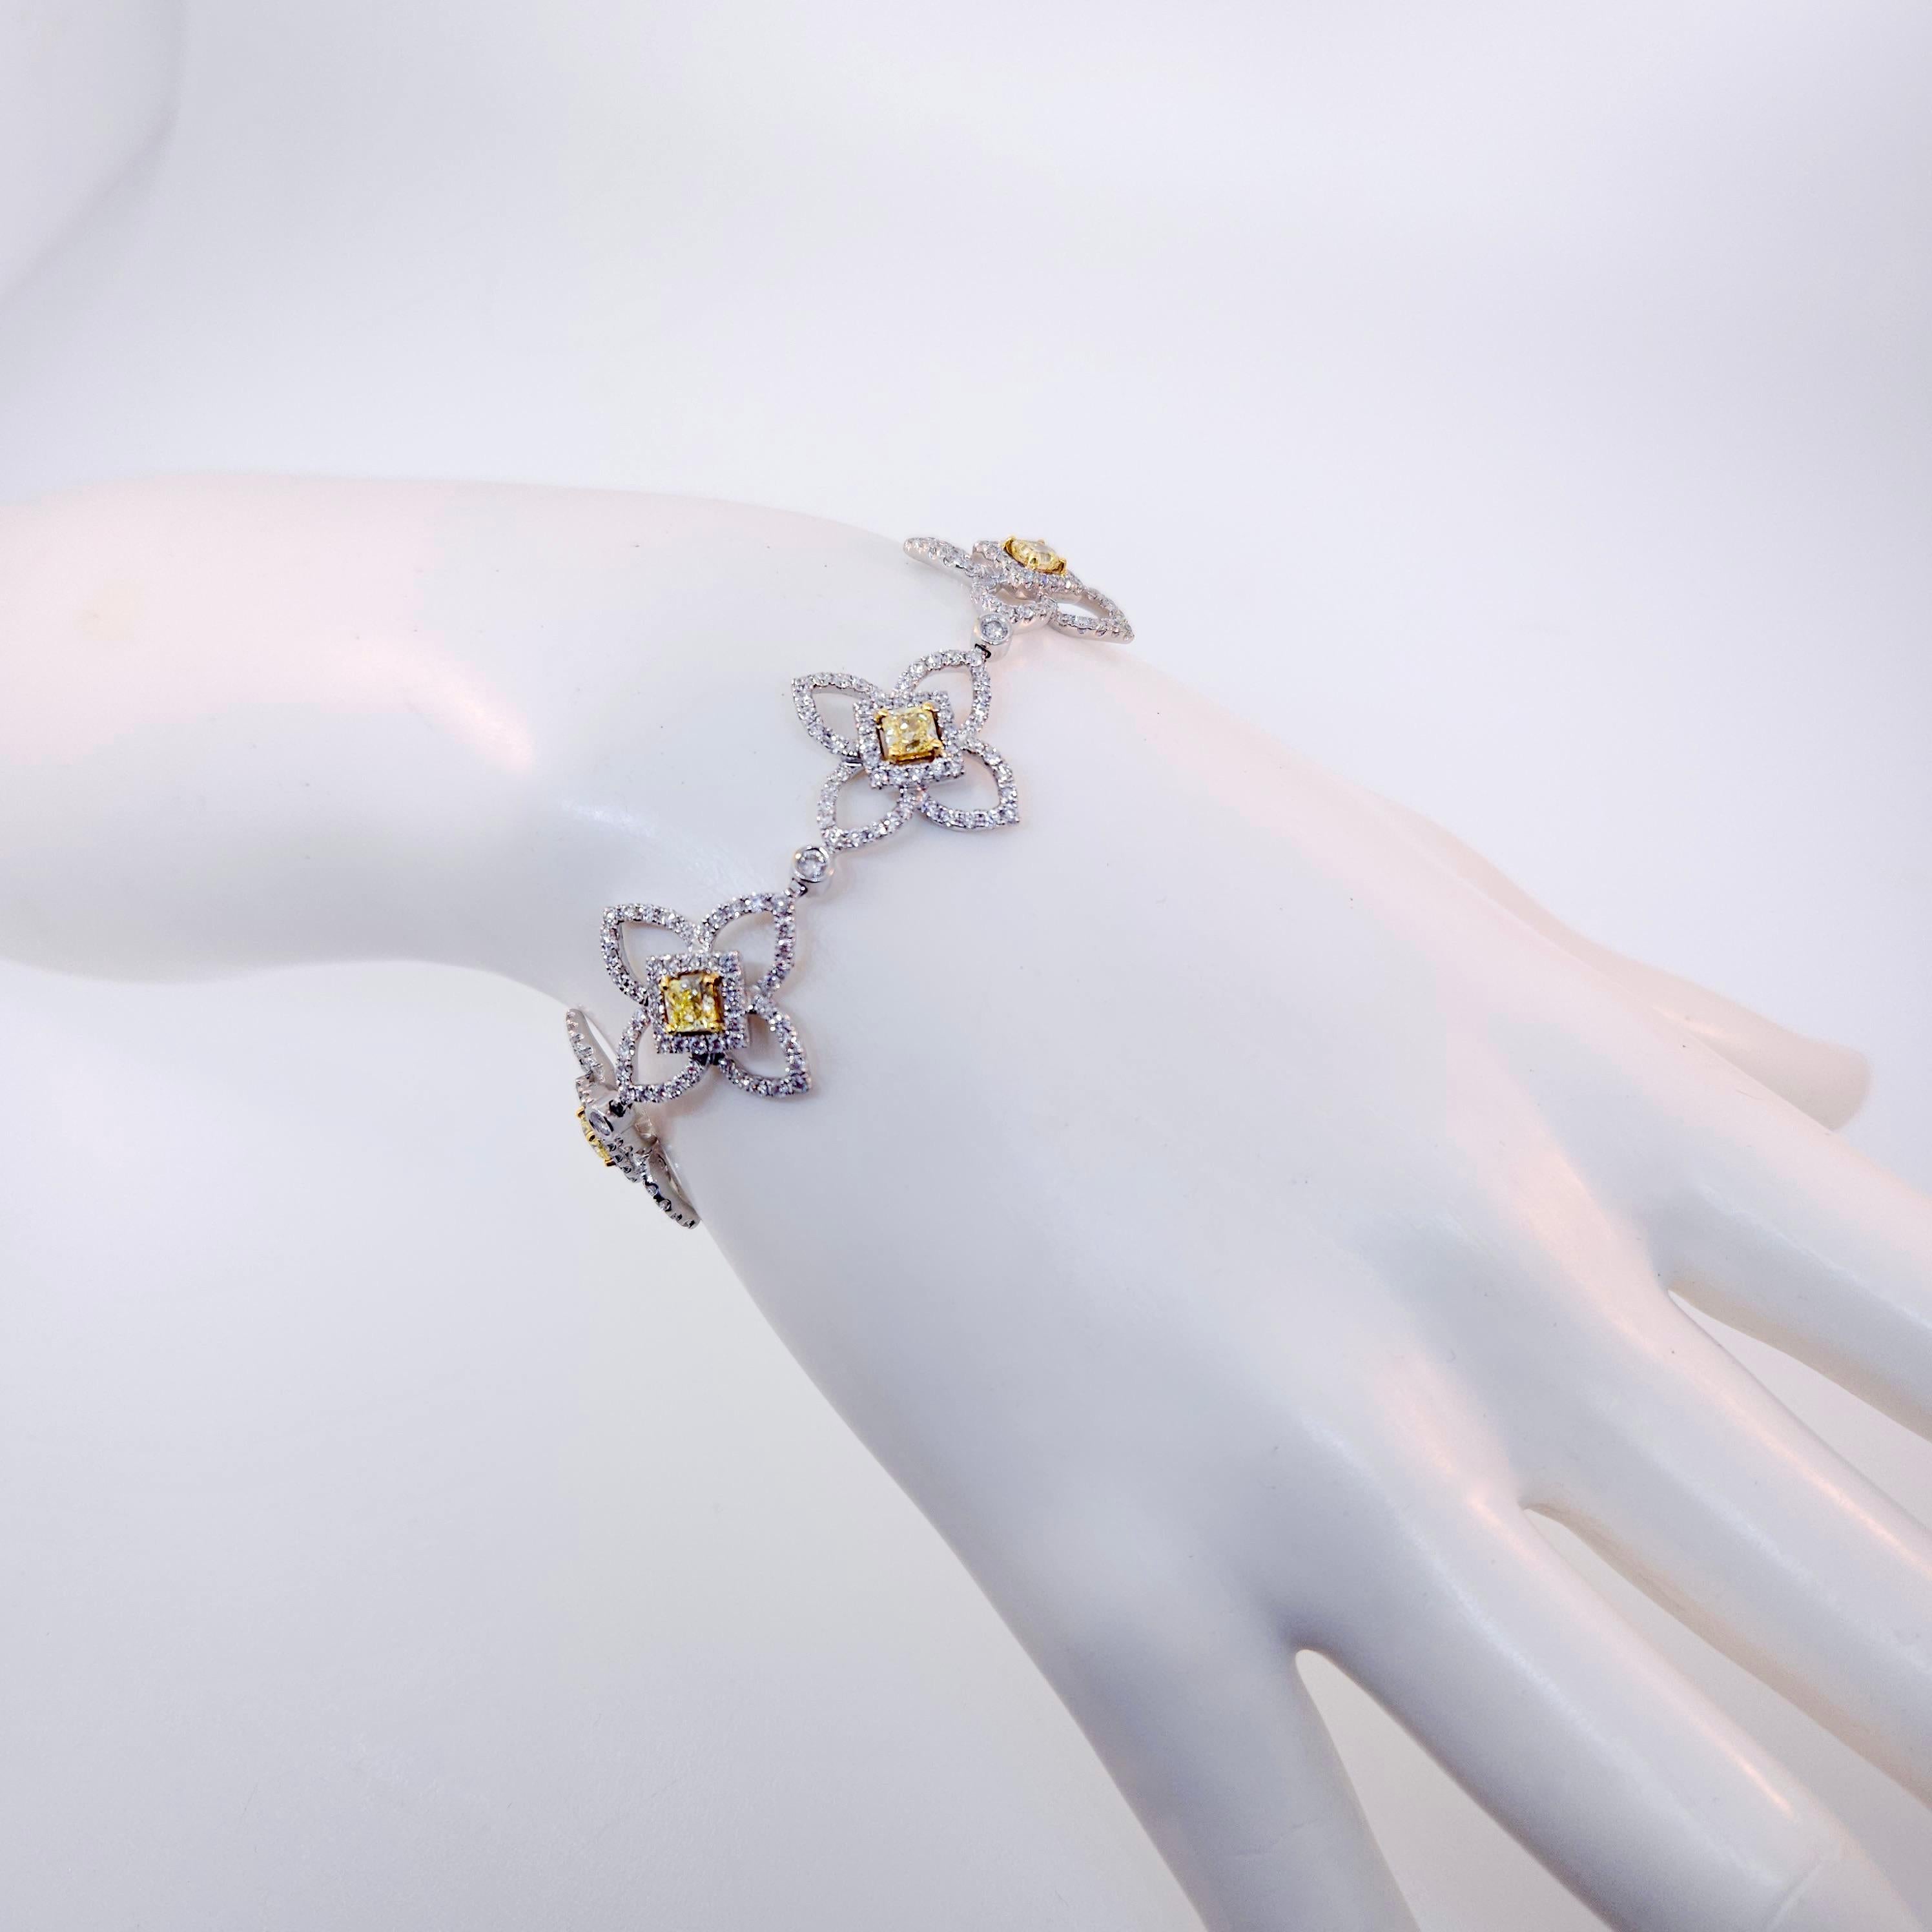 Merci de regarder ce magnifique bracelet en or blanc 18k diamanté par Luca.  Le bracelet contient des diamants d'un poids total de 7,16 carats.  Il y a 7 diamants de couleur jaune vif et de taille radieuse mesurant en moyenne 3,3 à 3,5 mm chacun, ce